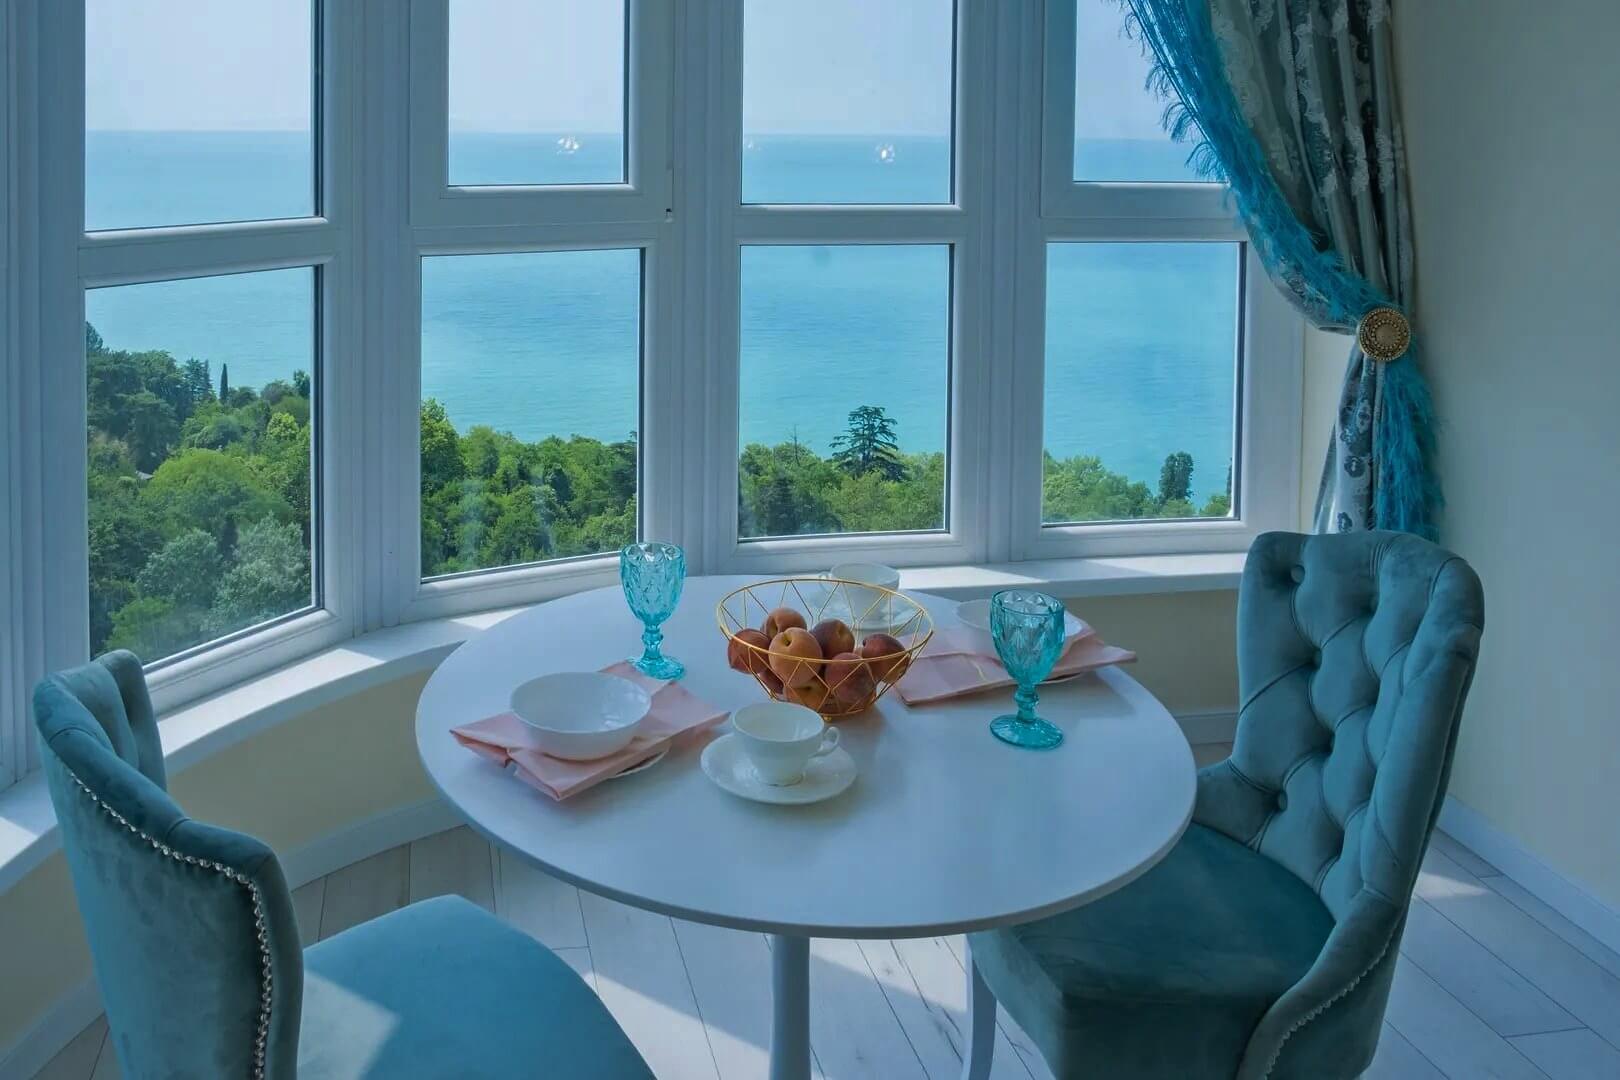 Завтрак у панорамного окна, идеальное начало дня.